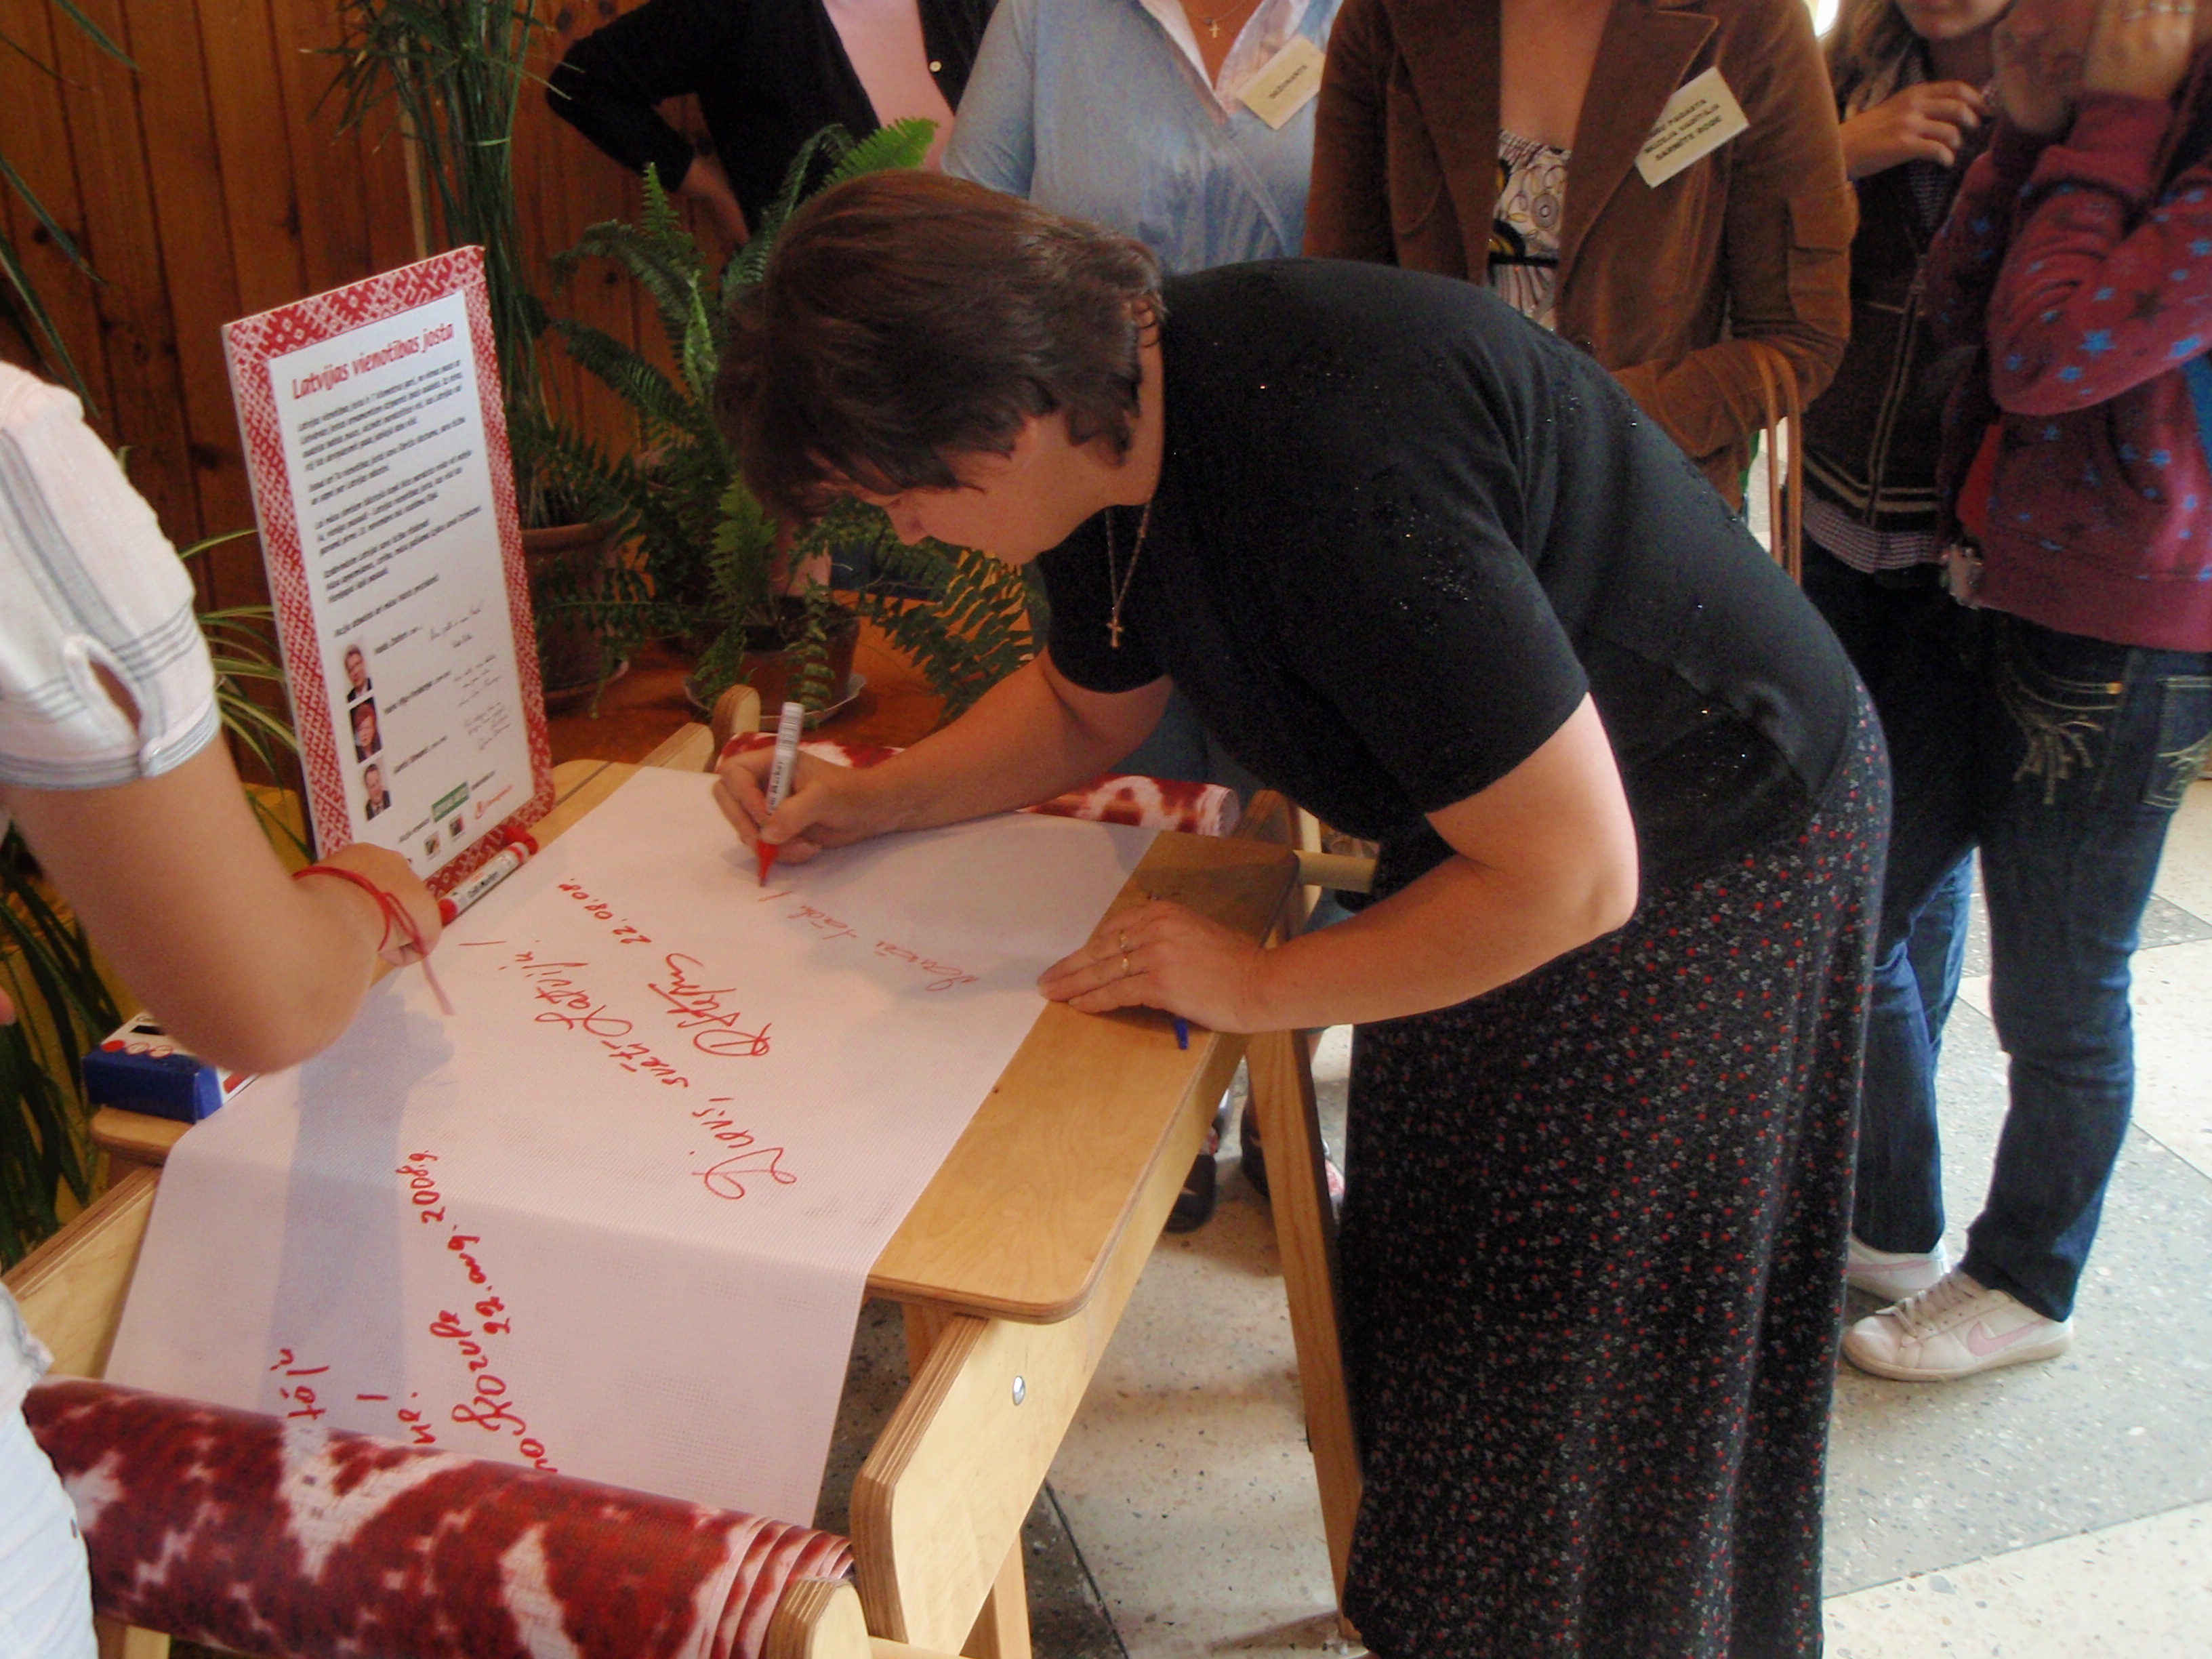 Bibliotēkas vadītāja Alita Kluša parakstās Vienotības jostā Aizkraukles rajona 7. Grāmatu svētku laikā